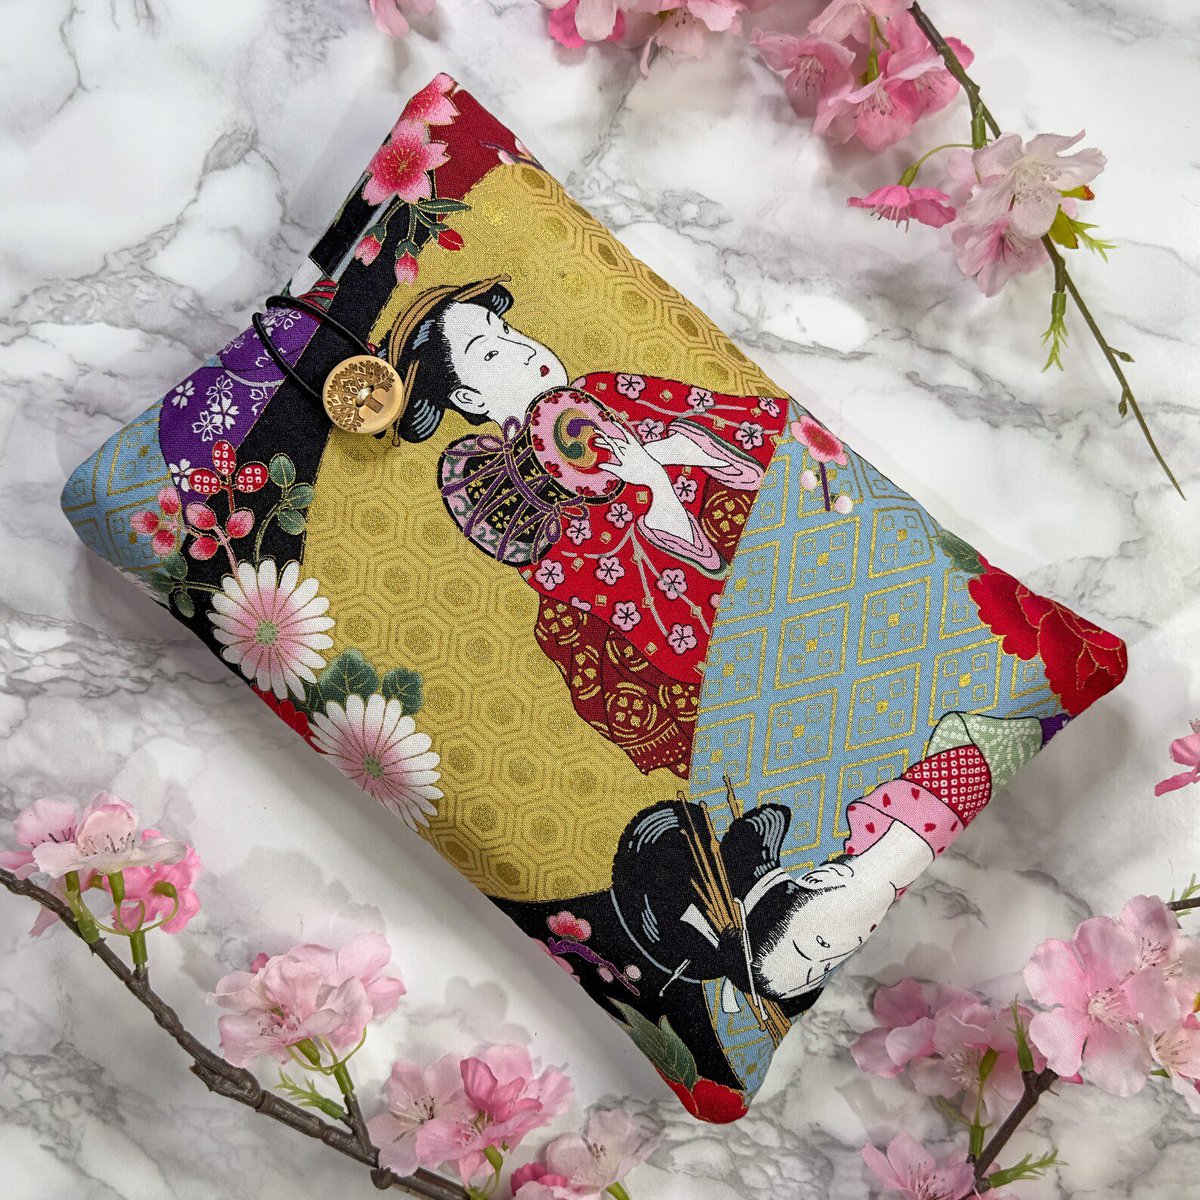 Japanese Cotton Book Sleeve japangiftsuk.etsy.com/listing/164242…

#MHHSBD #Handcrafted #JapanGifts #earlybiz #handmadehour #CraftBizParty #giftideas #UKCraftersHour #ShopSmall #UKGiftHour #UKGiftAM #inbizhour #smallbusiness #CelebsForSmallBiz #UKMakers #bizbubble #YourBizHour #etsyfinds…